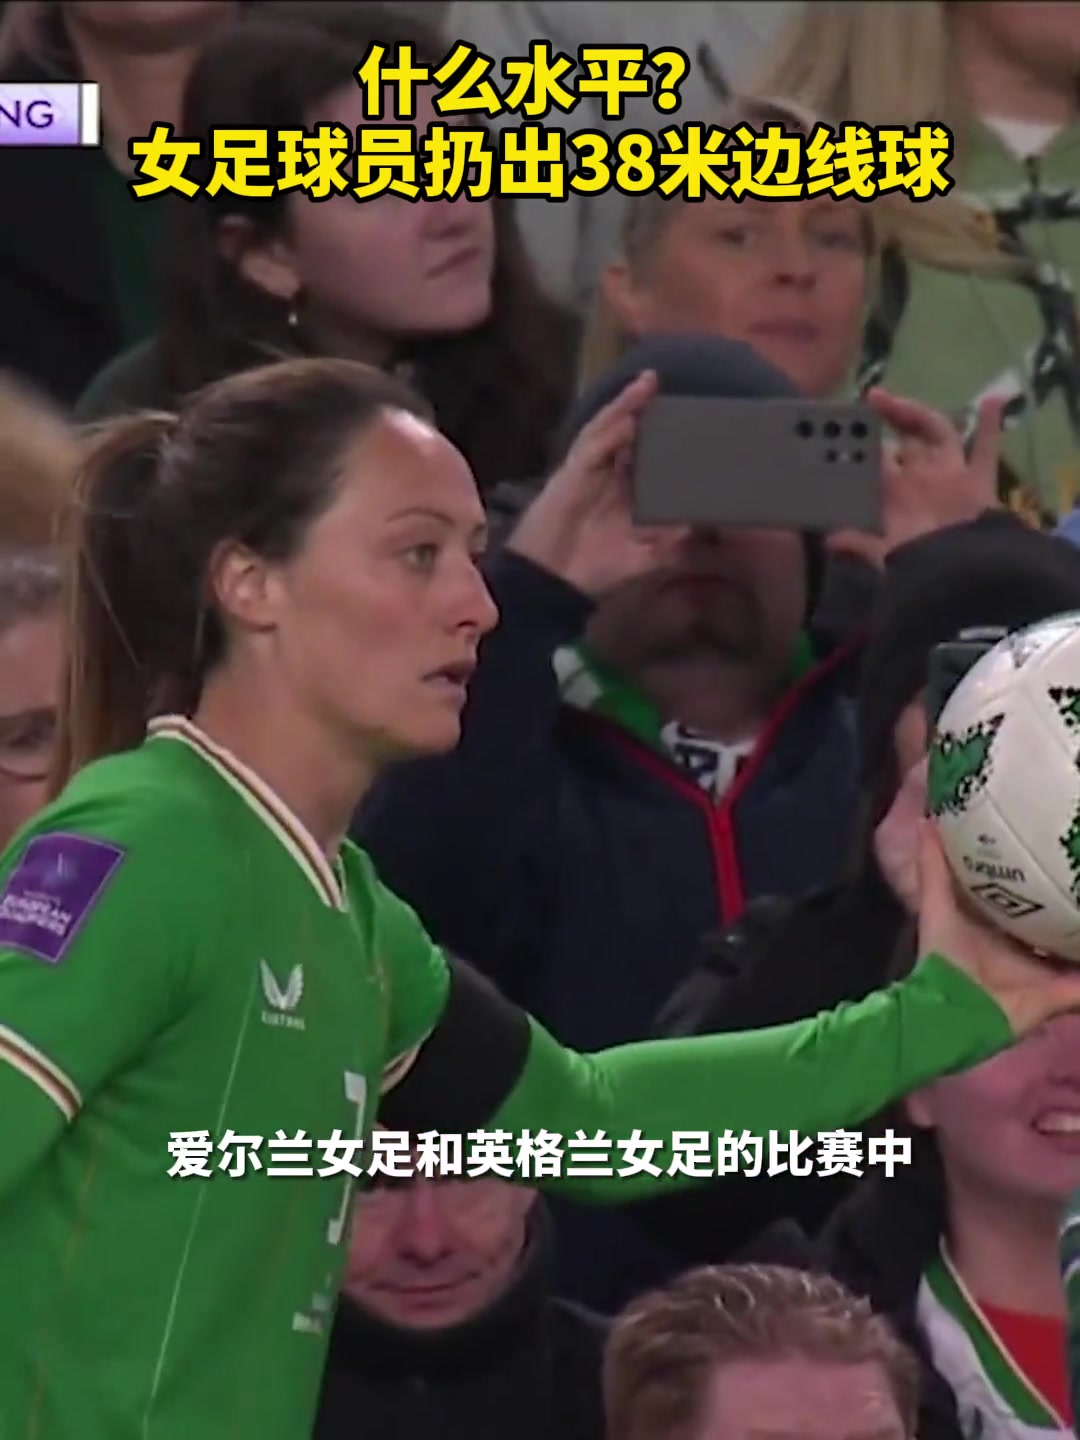 牛！爱尔兰女足球员扔出38米超远边线球